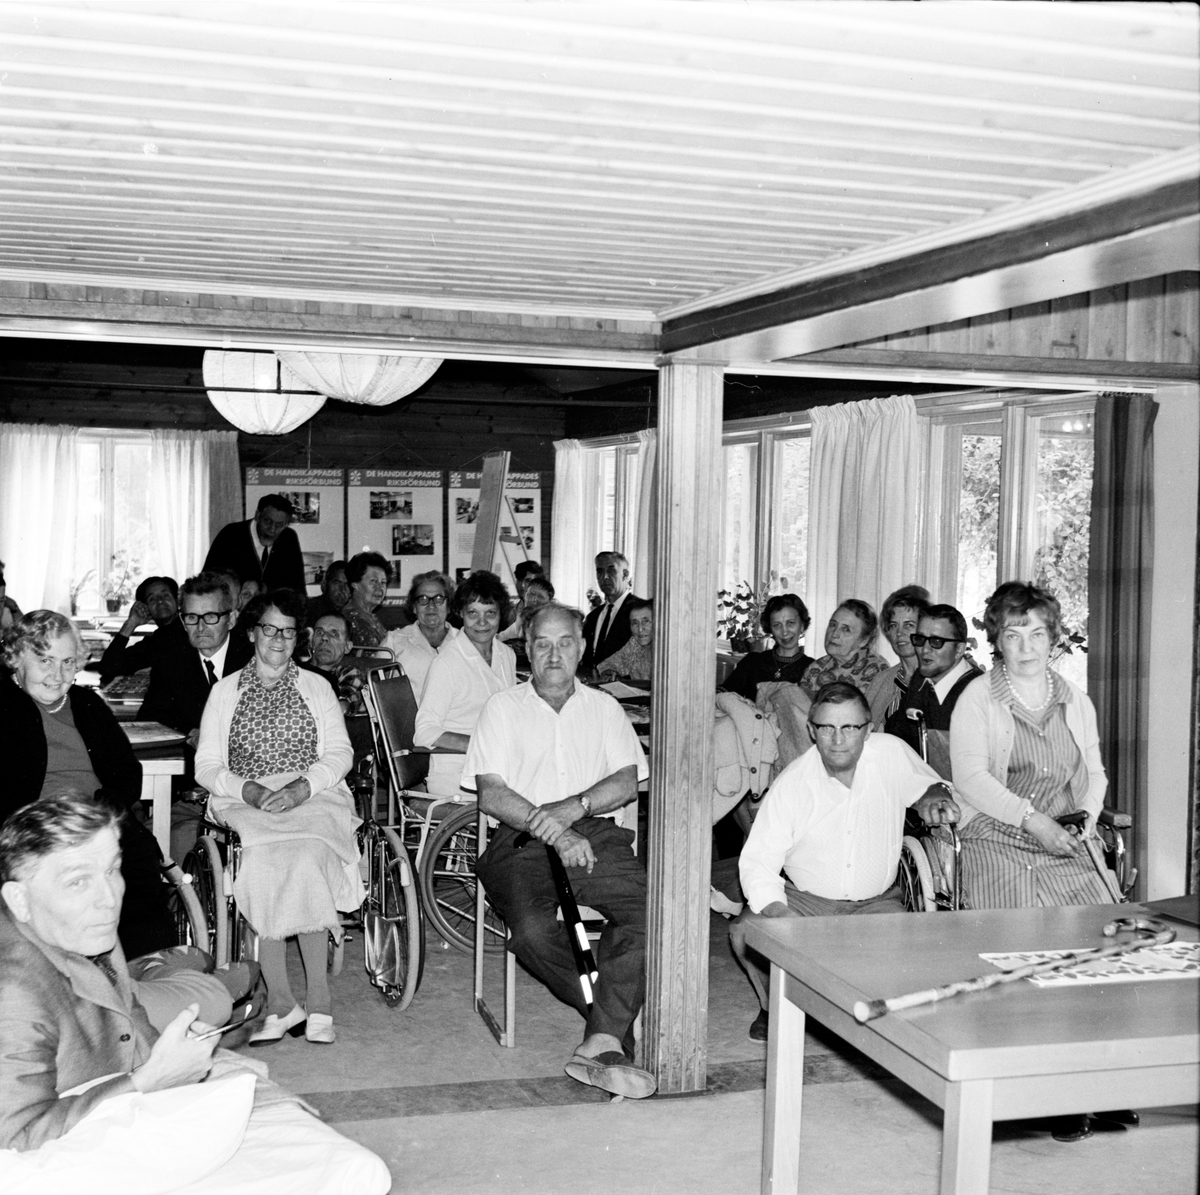 Bollegården,
De handikappade,
September 1968